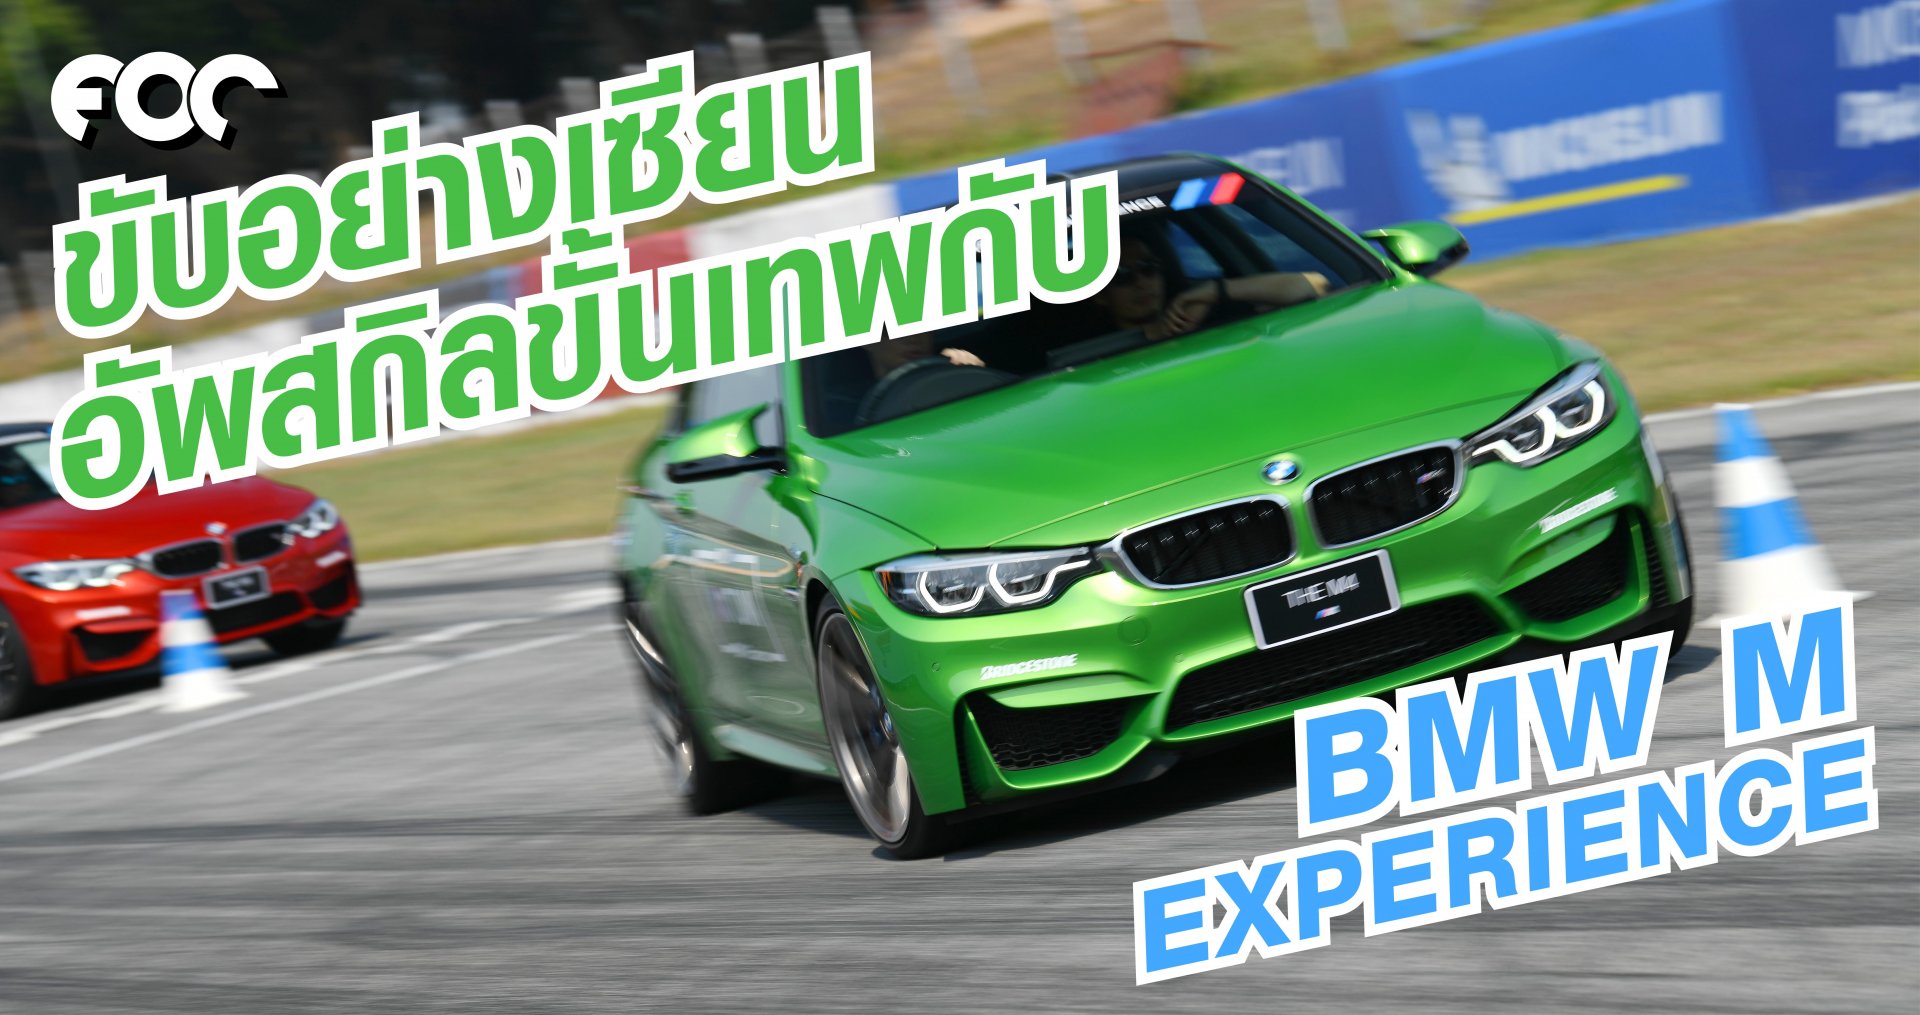 ขับอย่างเซียน อัพสกิลขั้นเทพกับ BMW /// M  Experience